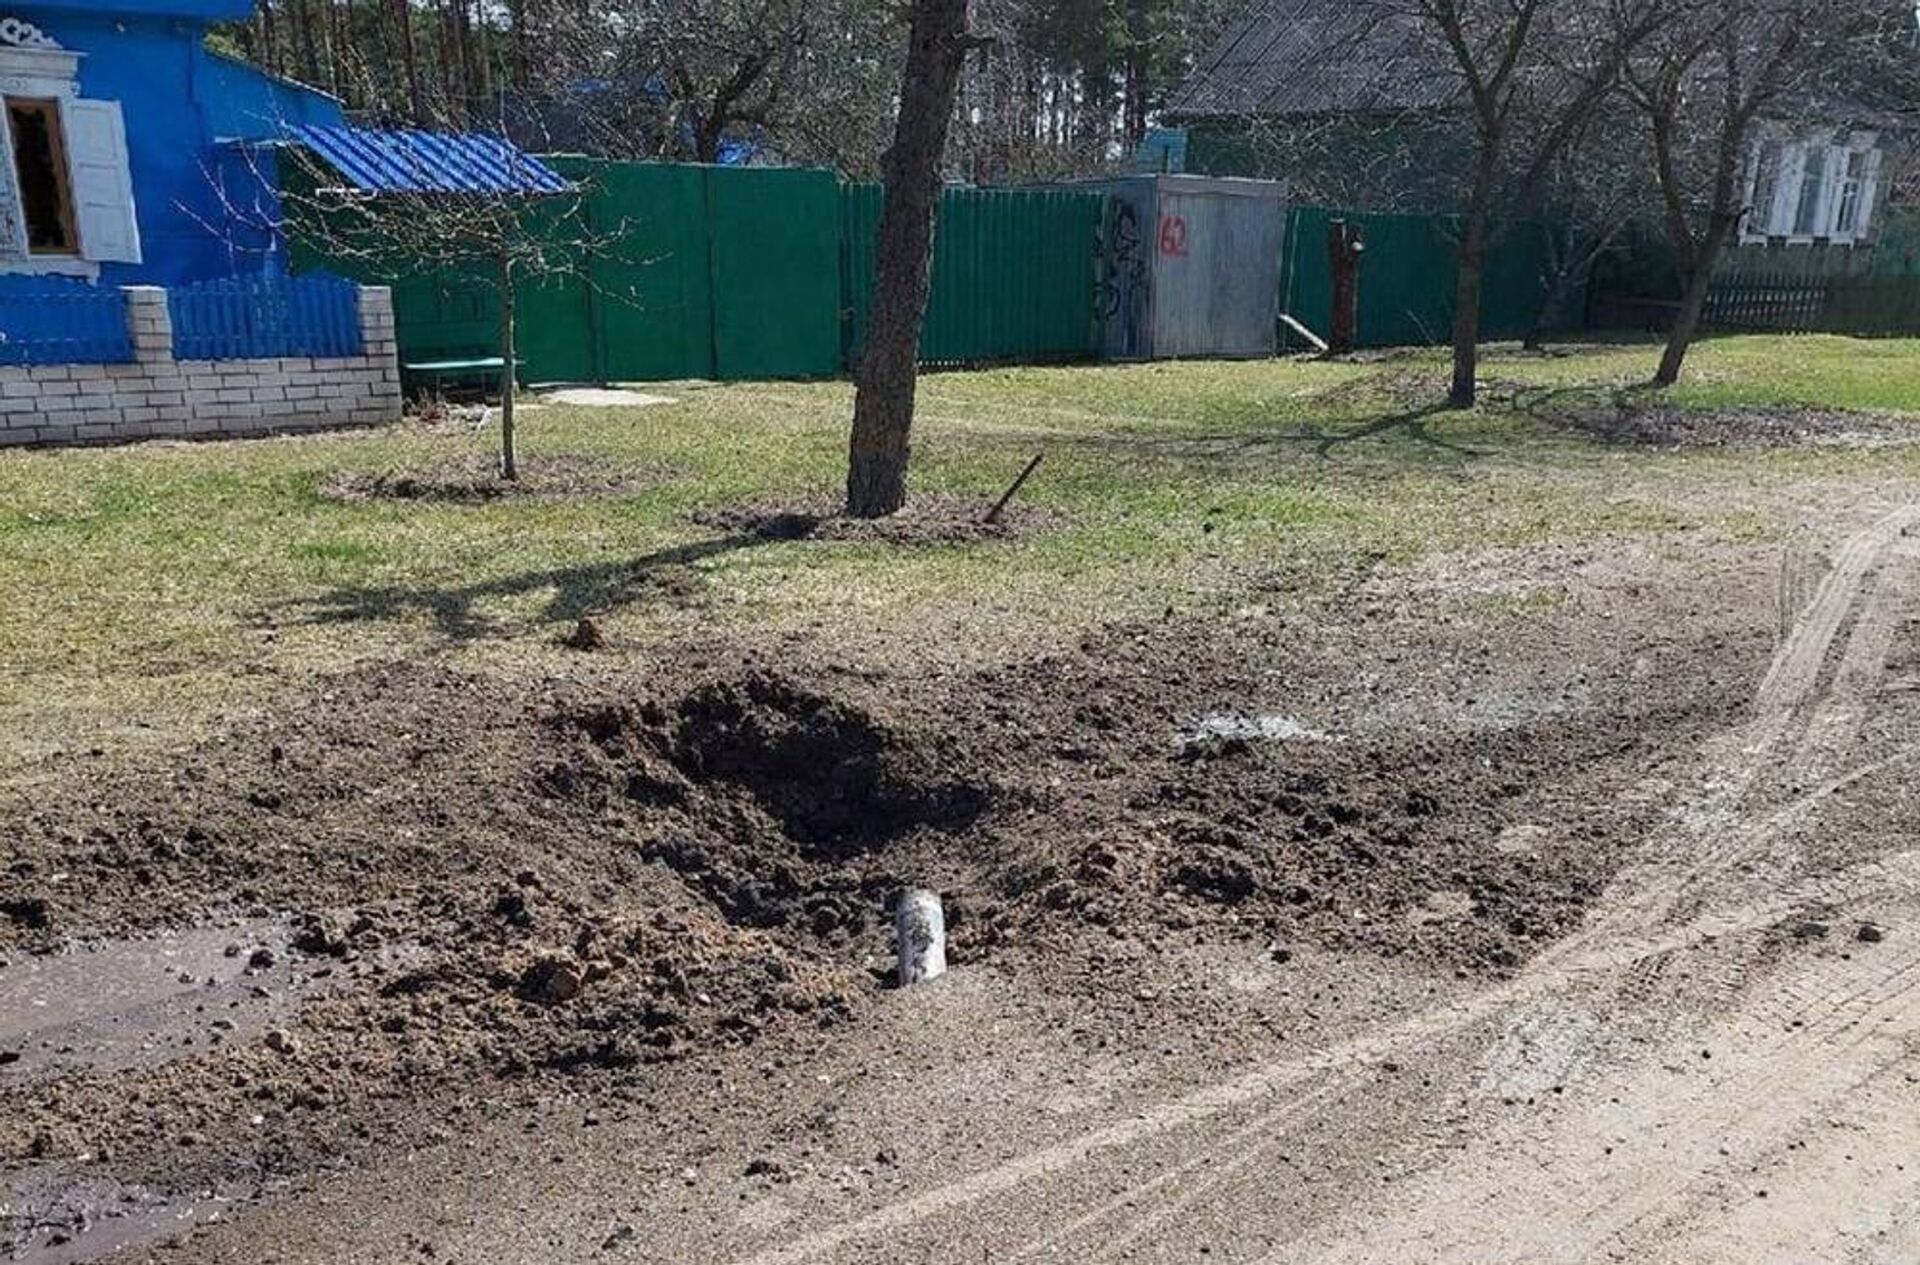 Воронка от взрыва снаряда в поселке Климово Брянской области, 14 апреля 2022 года  - Sputnik Латвия, 1920, 15.04.2022